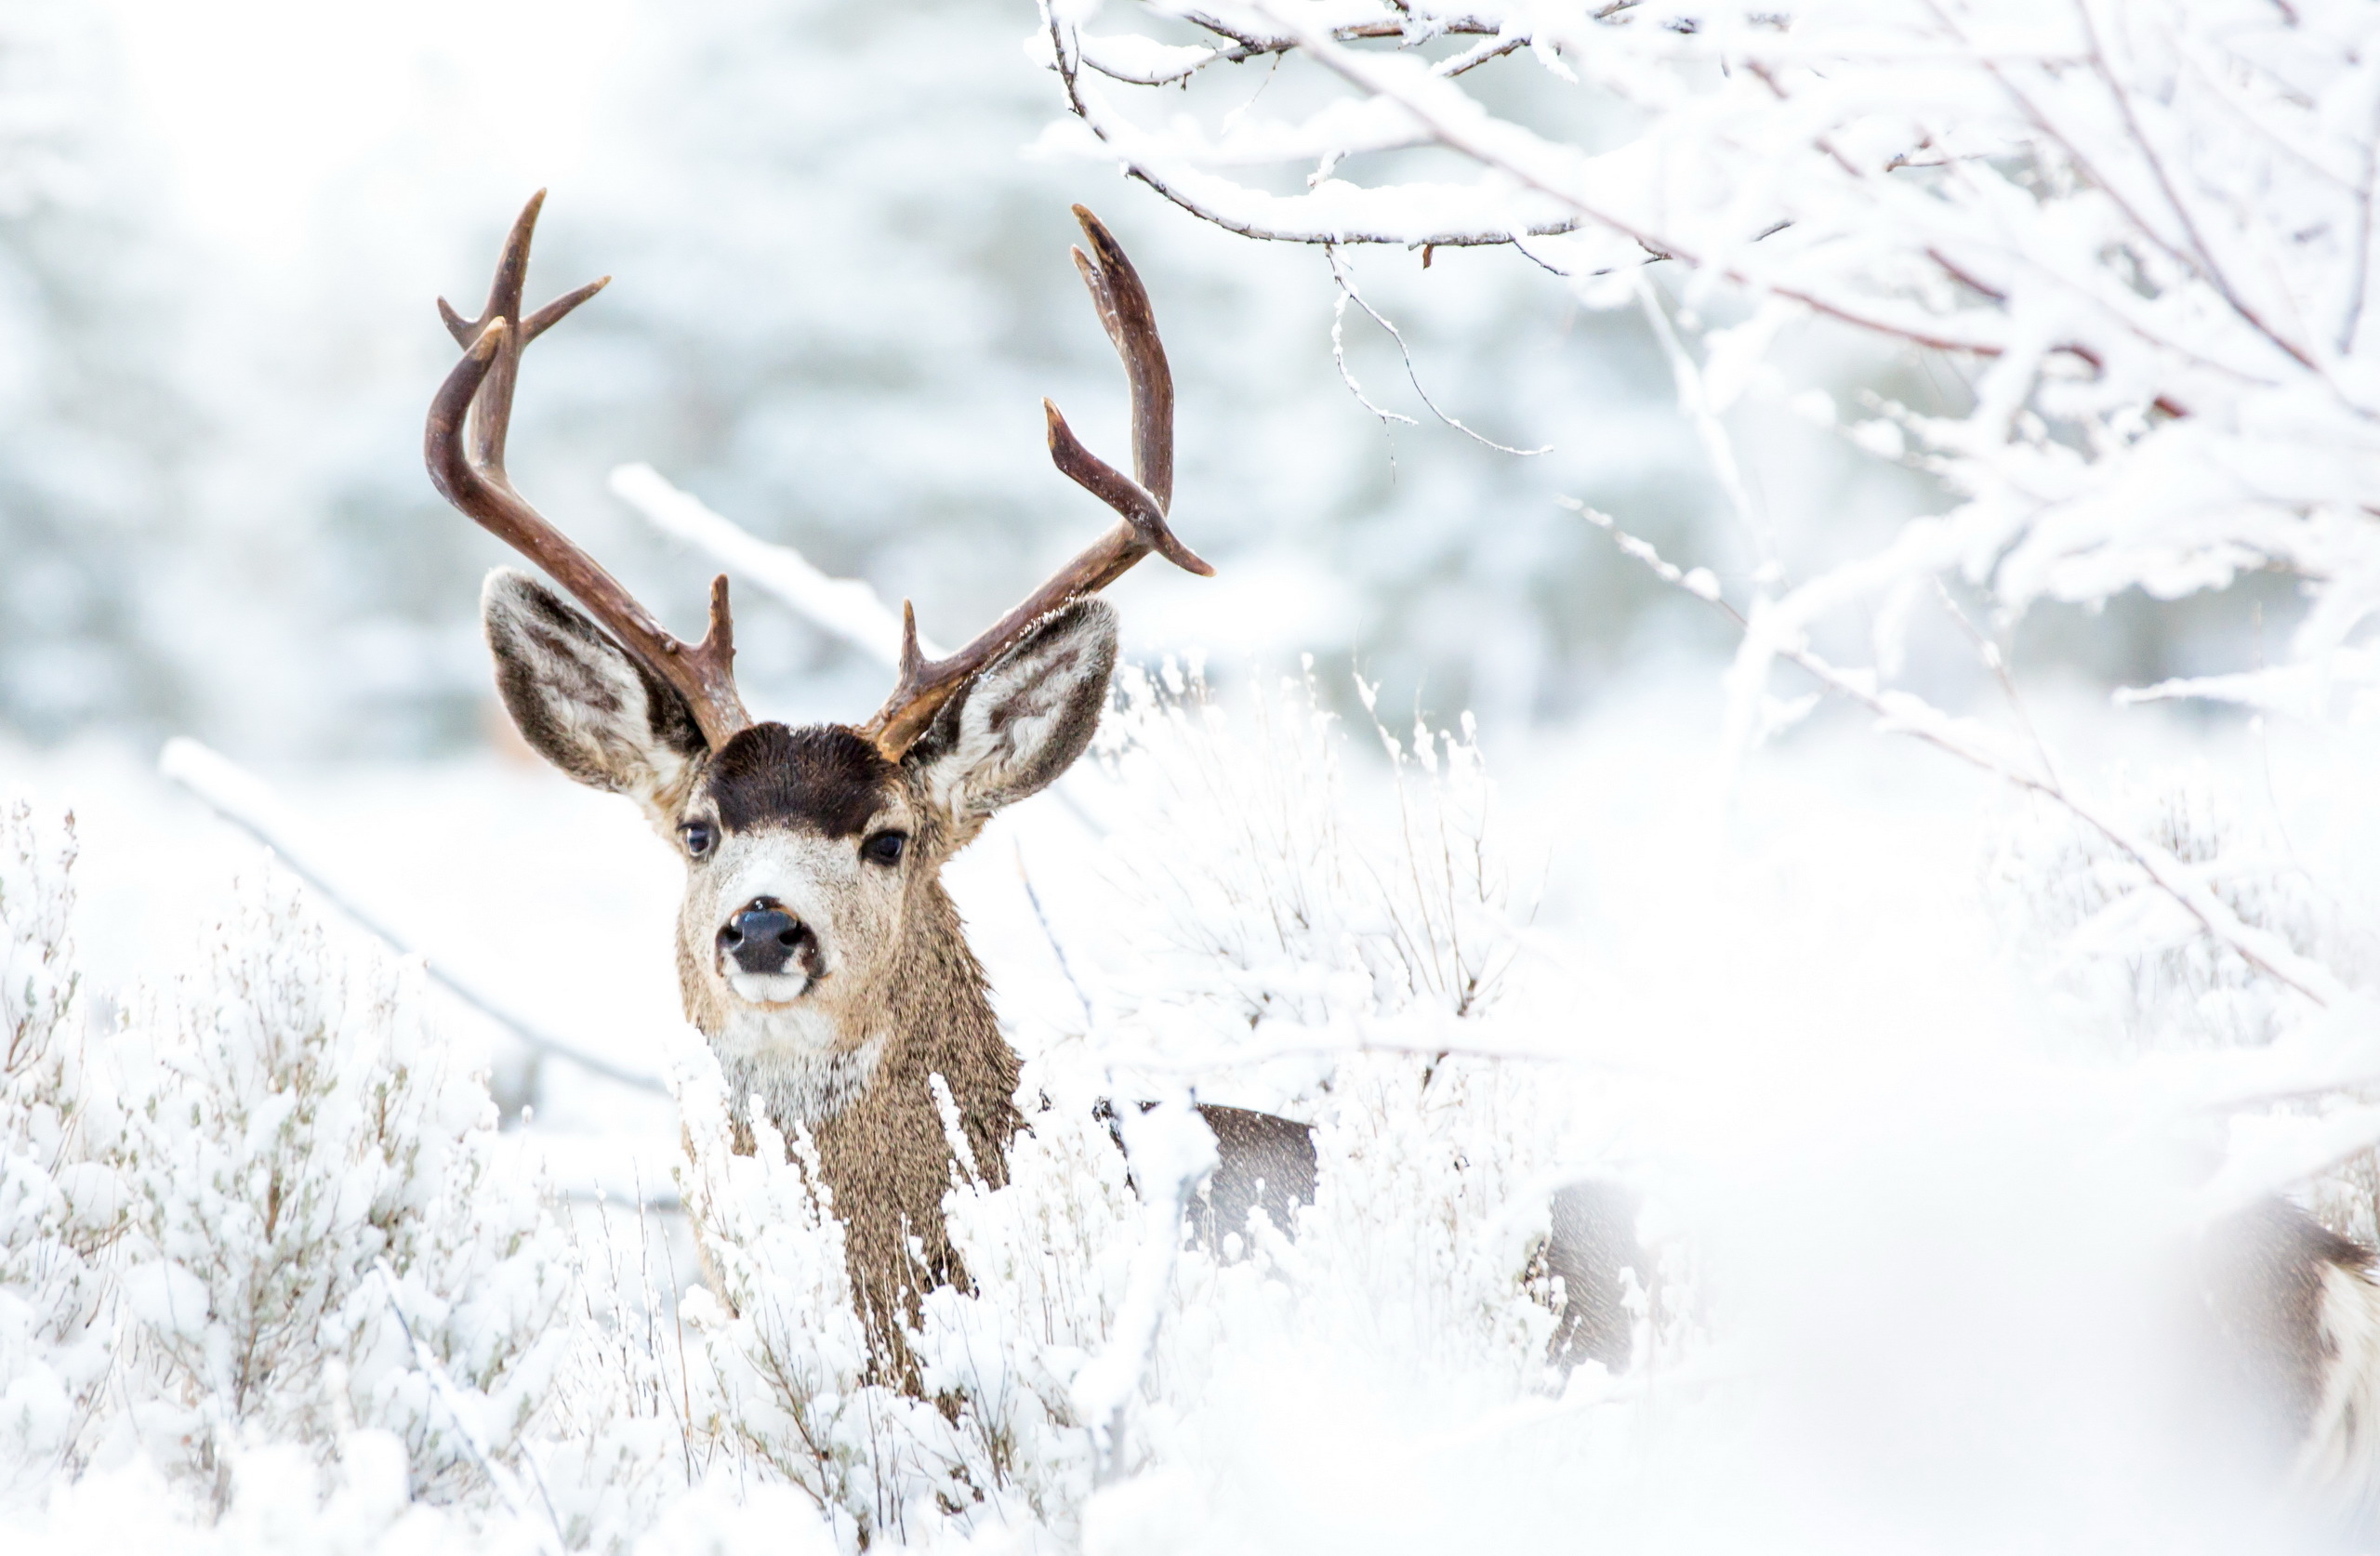 Deer in winter photo